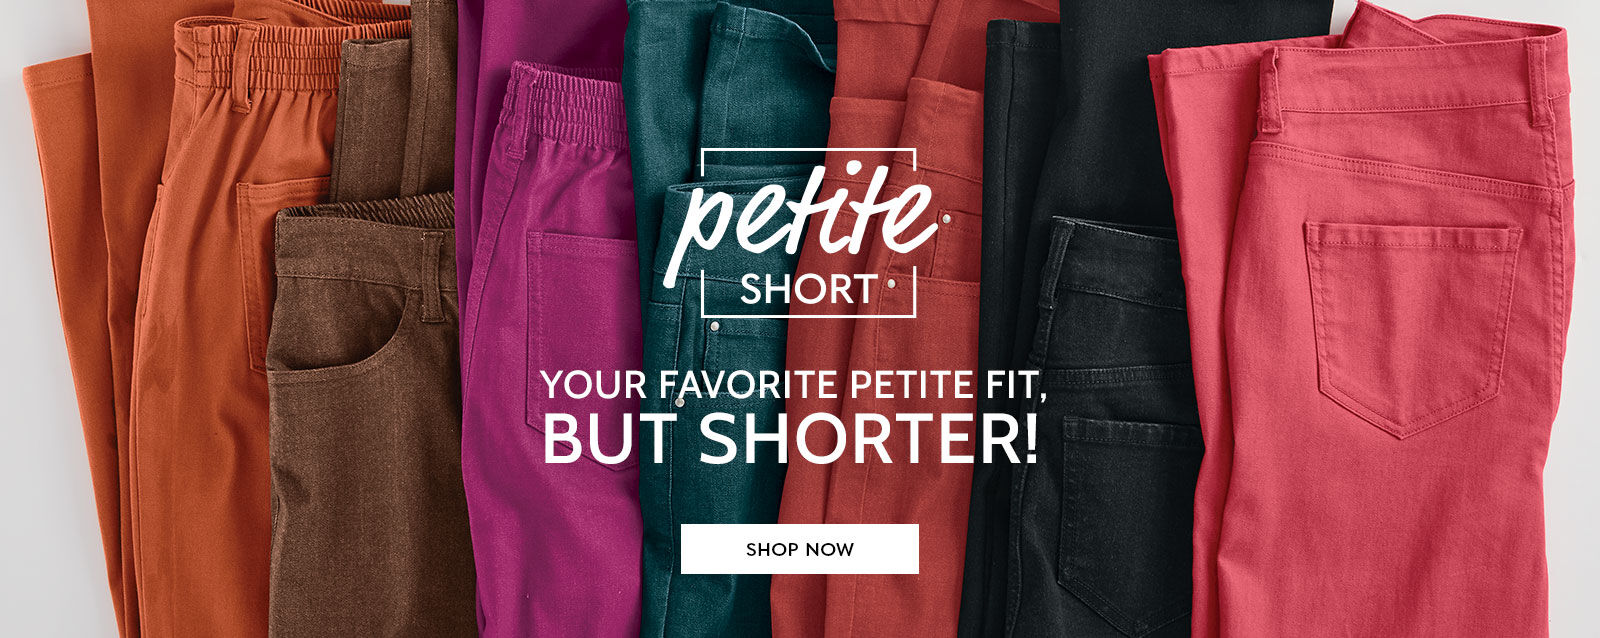 petite short your favorite petite fit but shorter! shop now